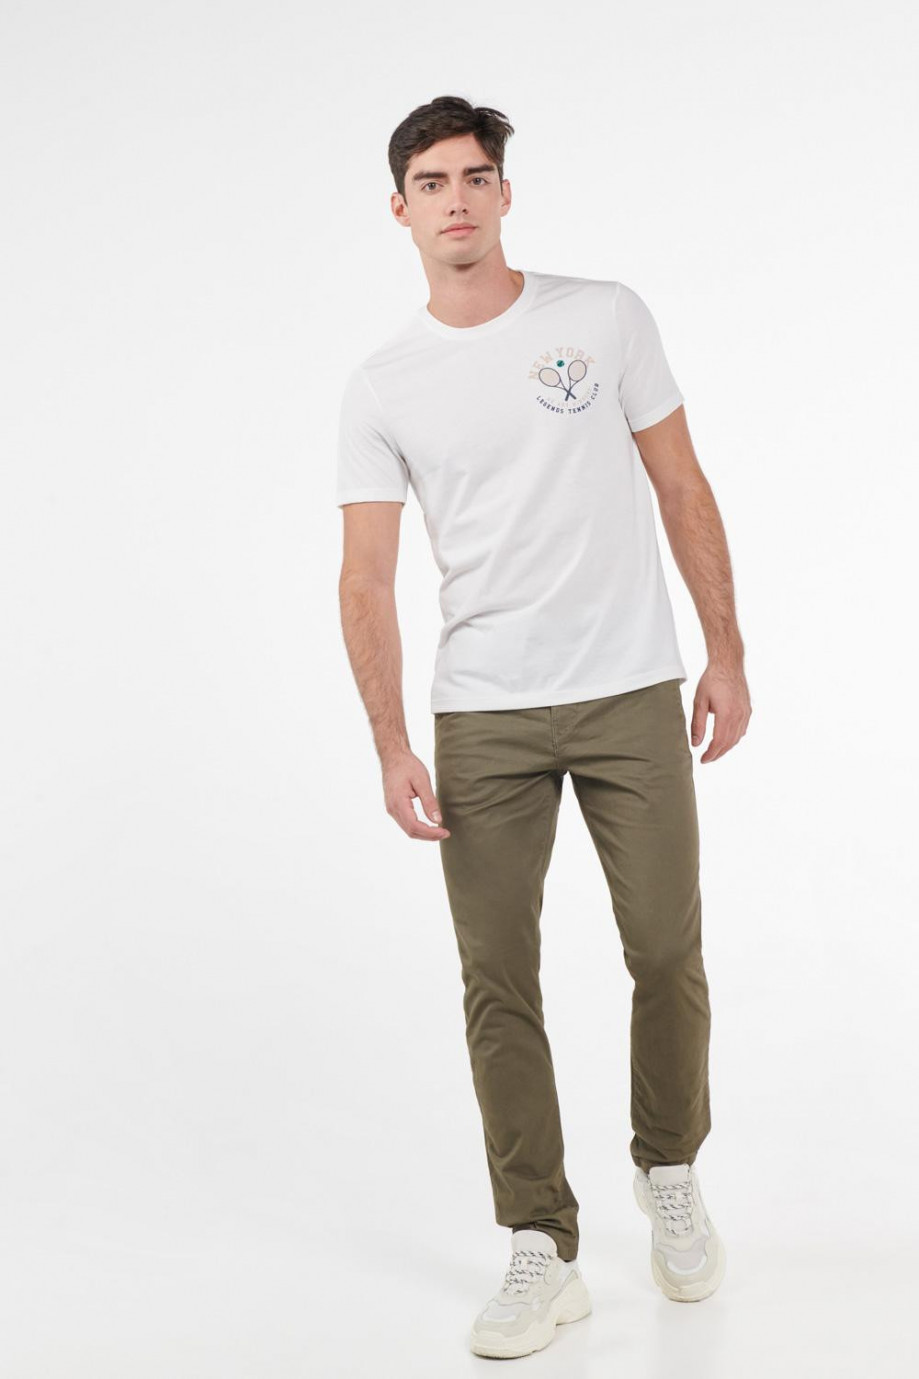 Camiseta crema clara con estampado deportivo y manga corta